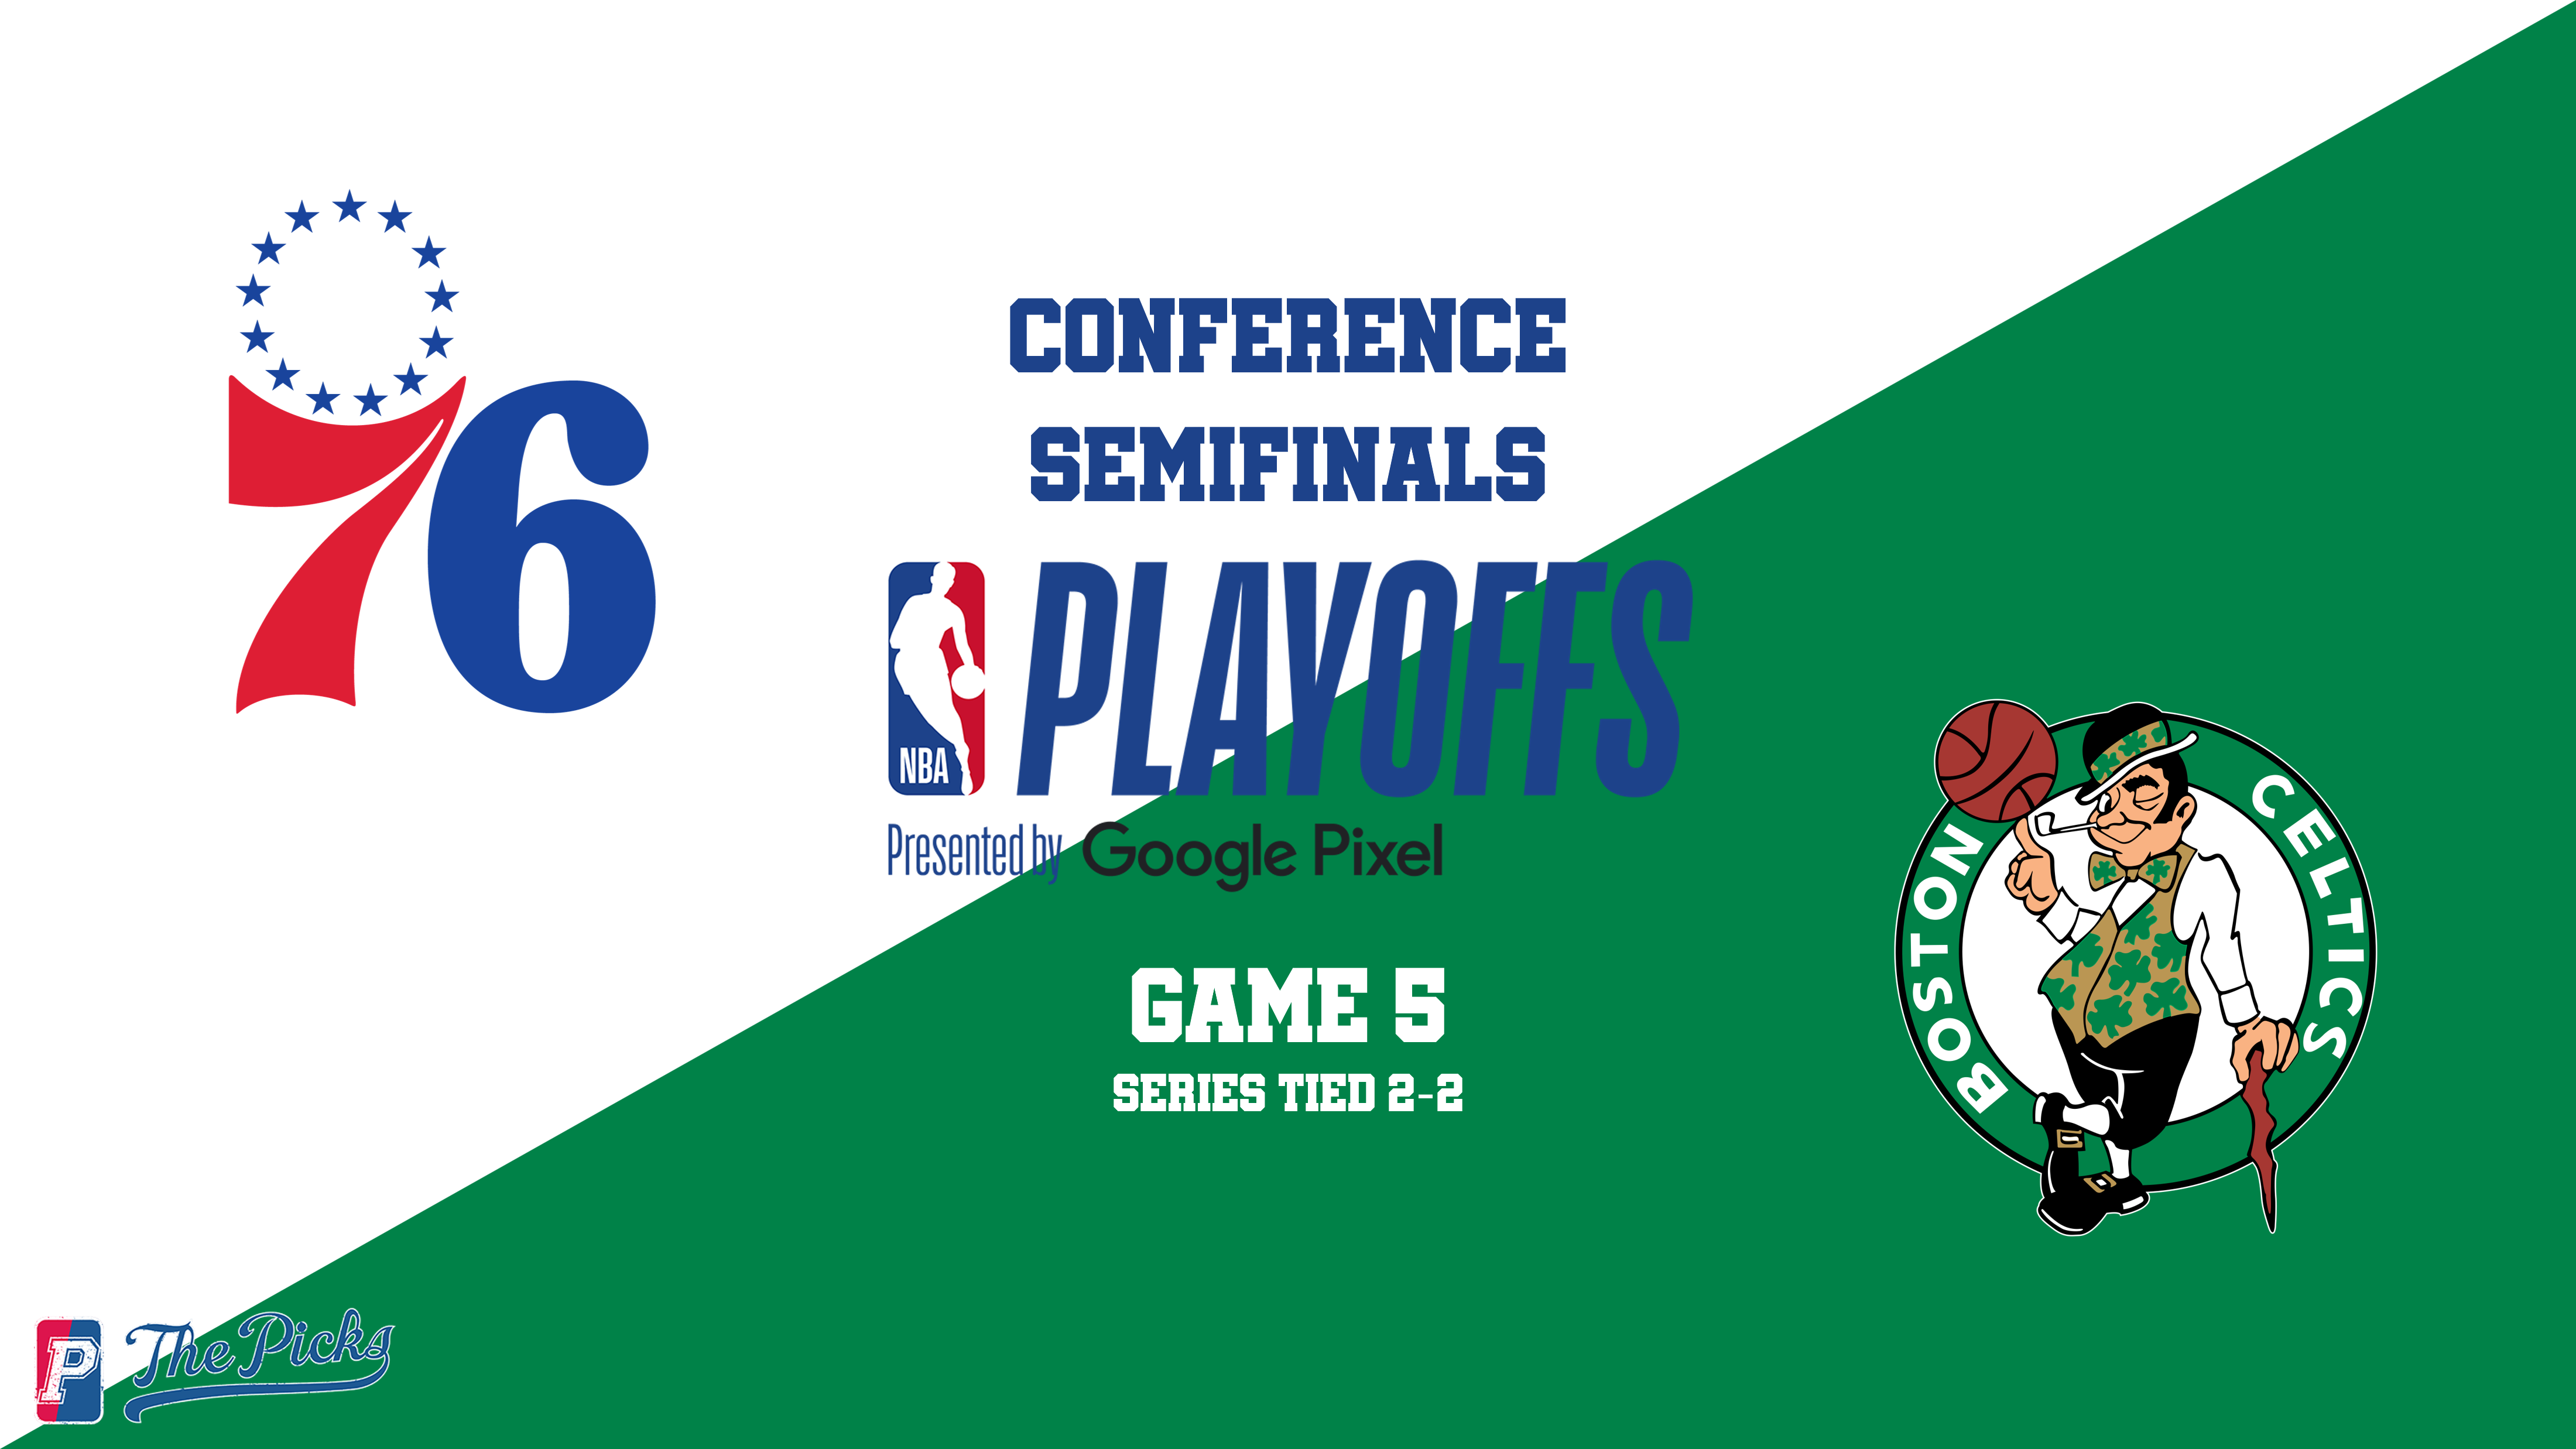 Celtics hosting 76ers in Game 5